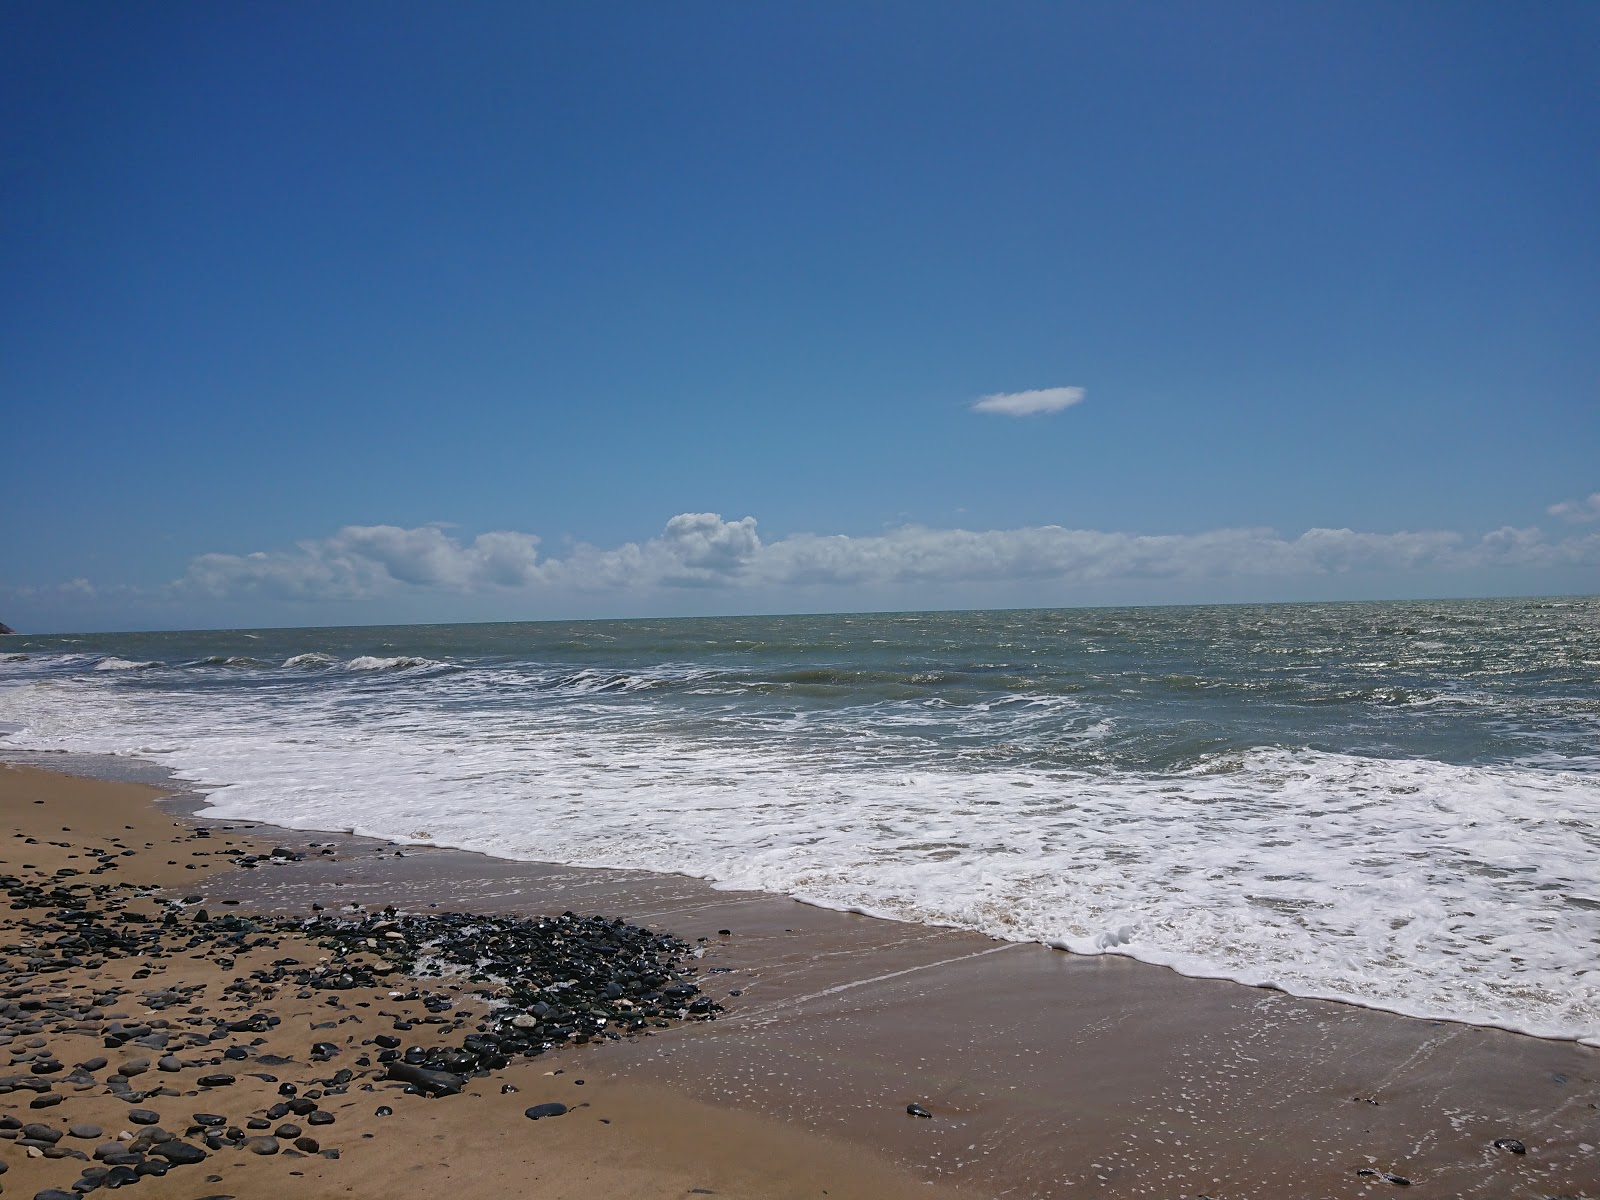 Foto di Wangetti Beach ubicato in zona naturale